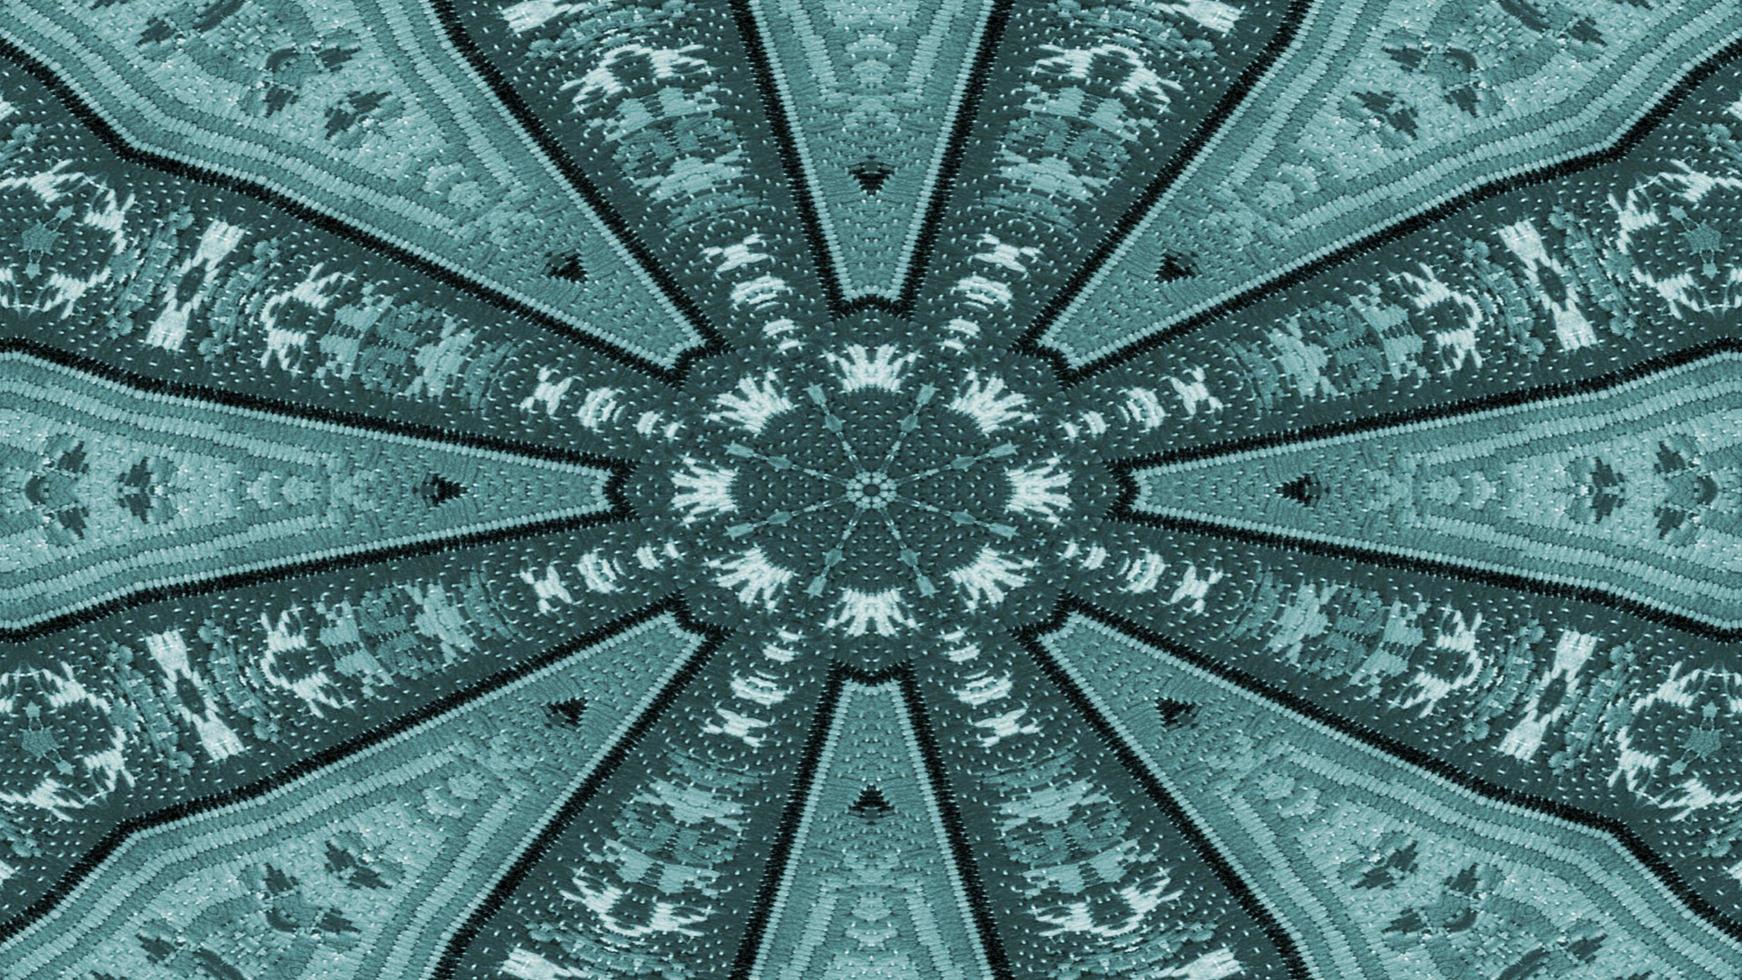 kaléidoscope de tapis ethnique authentique photo